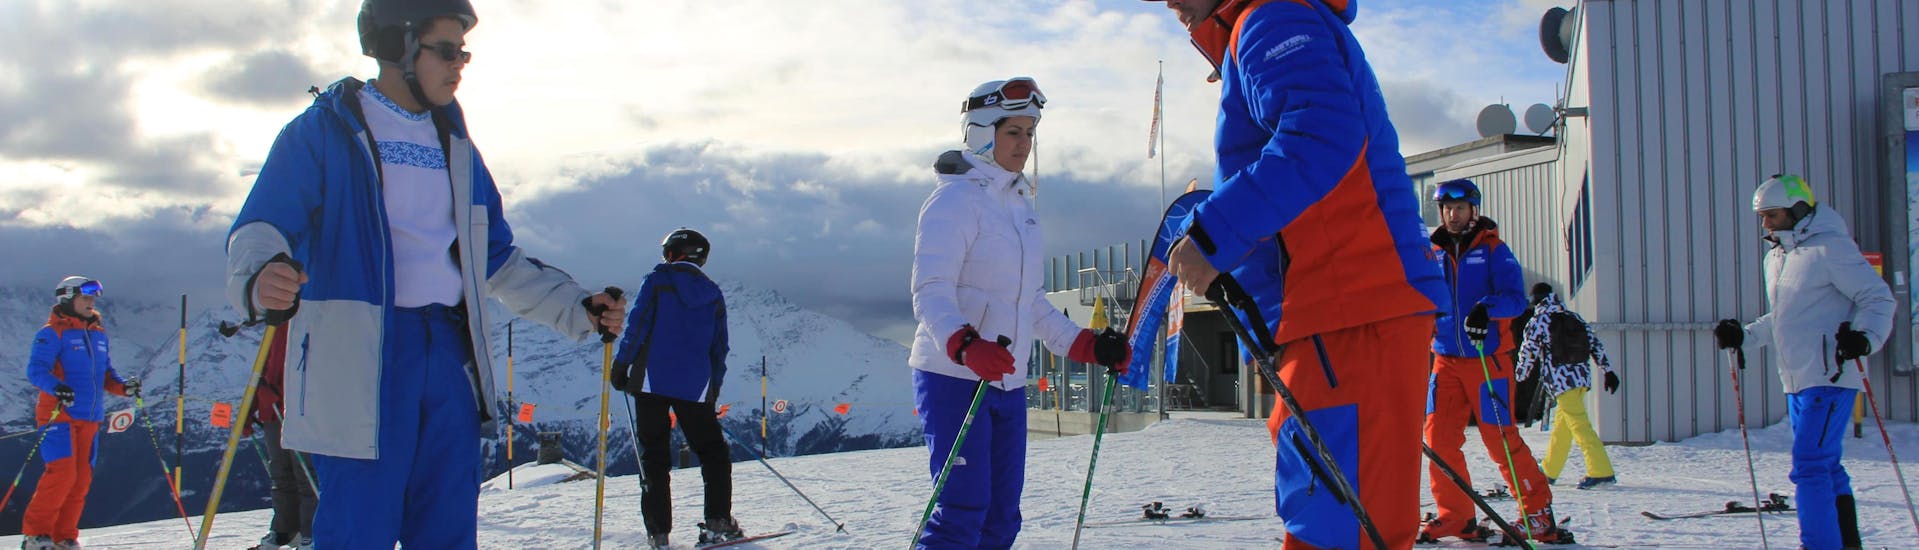 Clases de esquí para adultos a partir de 16 años para todos los niveles con Tzoum'Évasion La Tzoumaz.